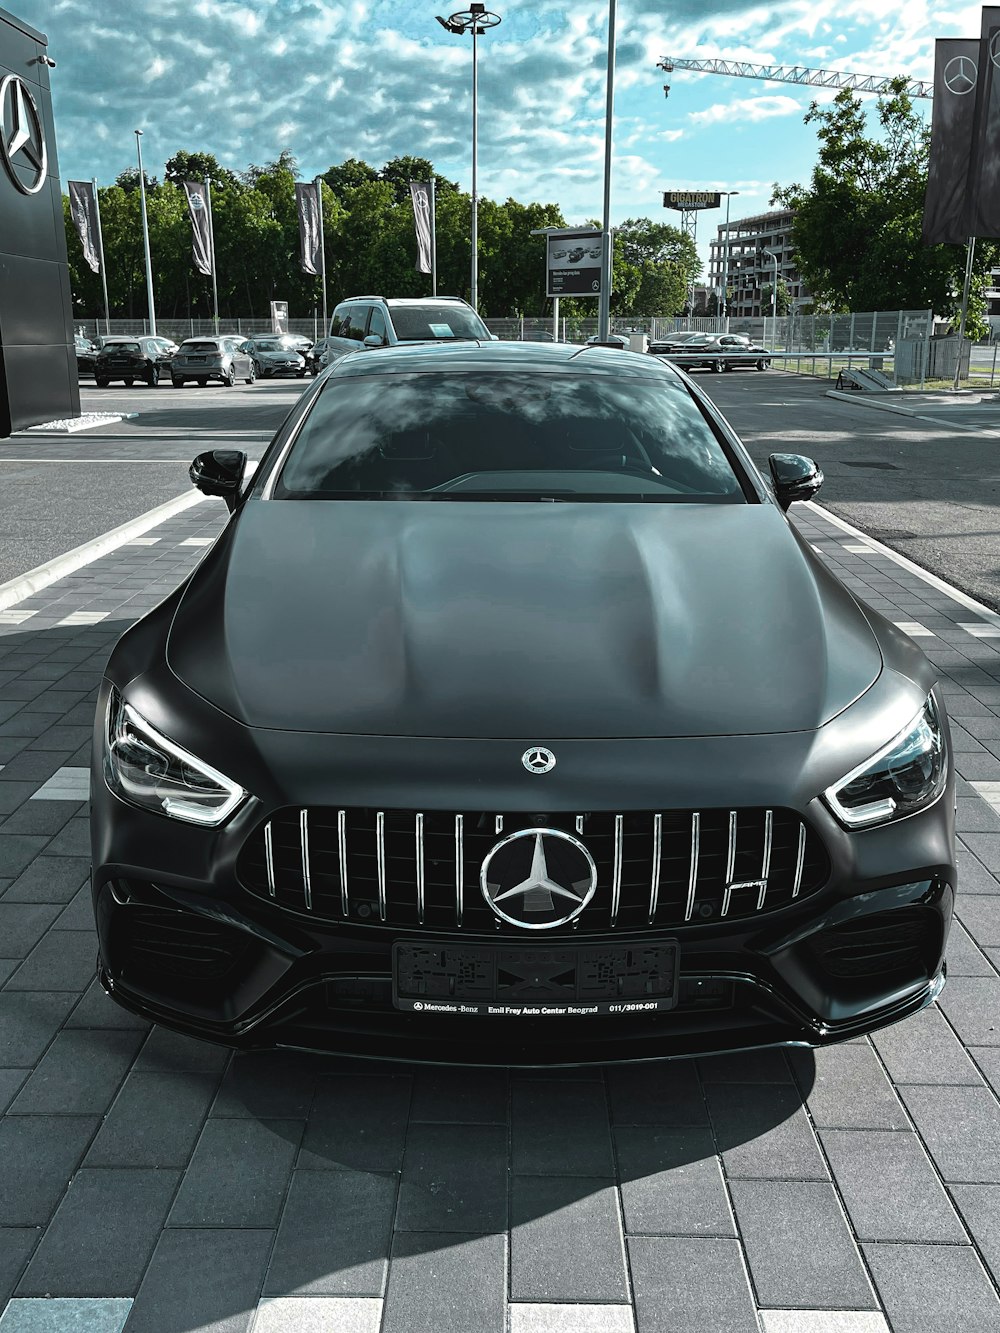 Más de 500 imágenes de Mercedes Benz | Descargar imágenes gratis en Unsplash